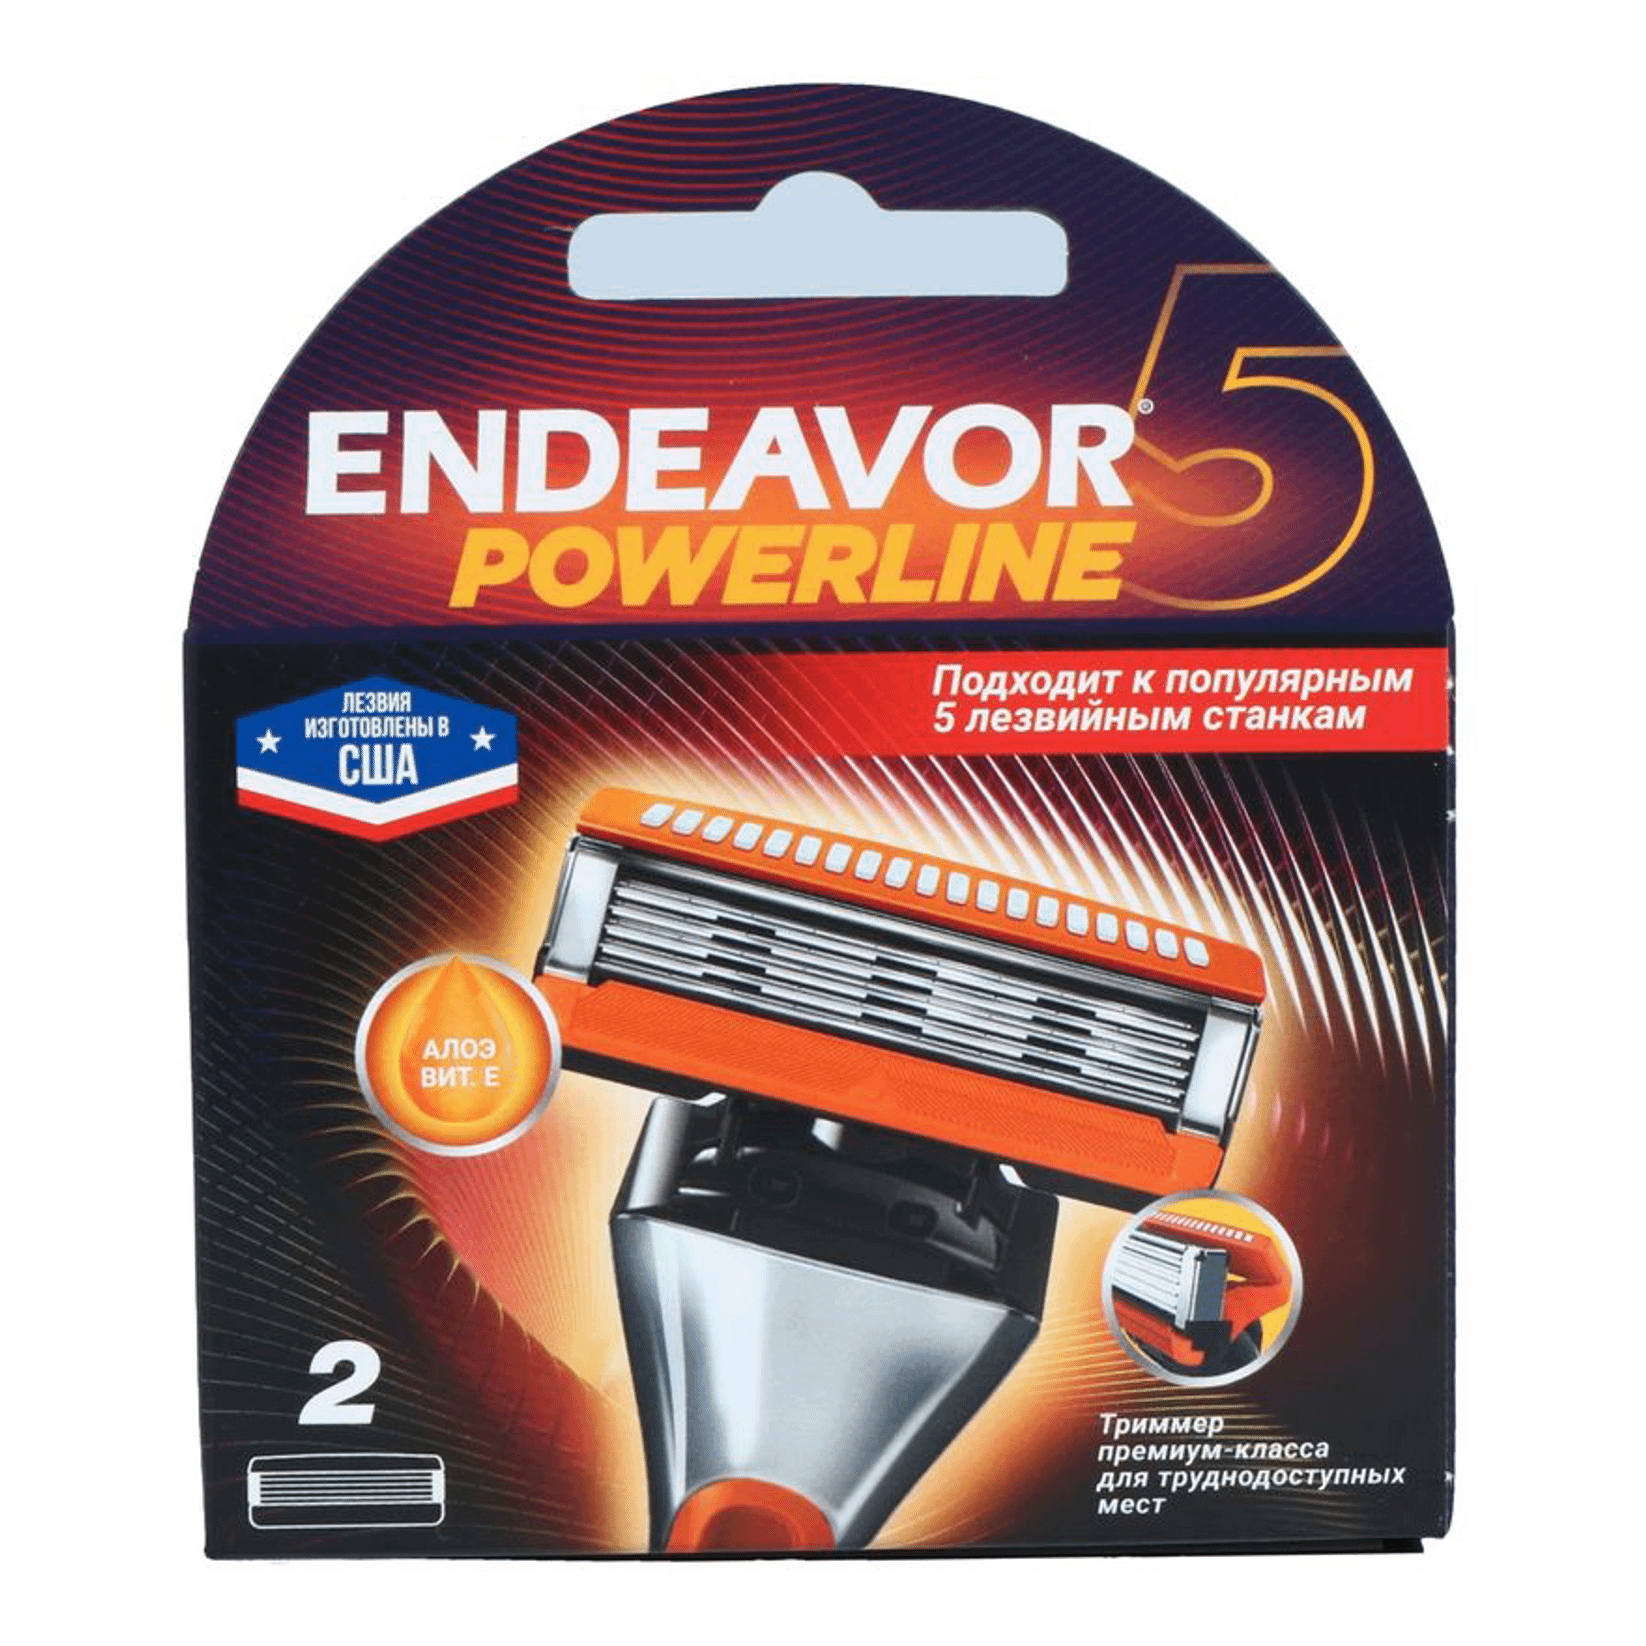 5 лезвия для бритья купить. Кассеты для бритья Endeavor Powerline 5 2шт. Endeavor Genesis с 5 лезвиями. Кассеты Endeavor Genesis с 5. Кассеты Endeavor Genesis для бритья.